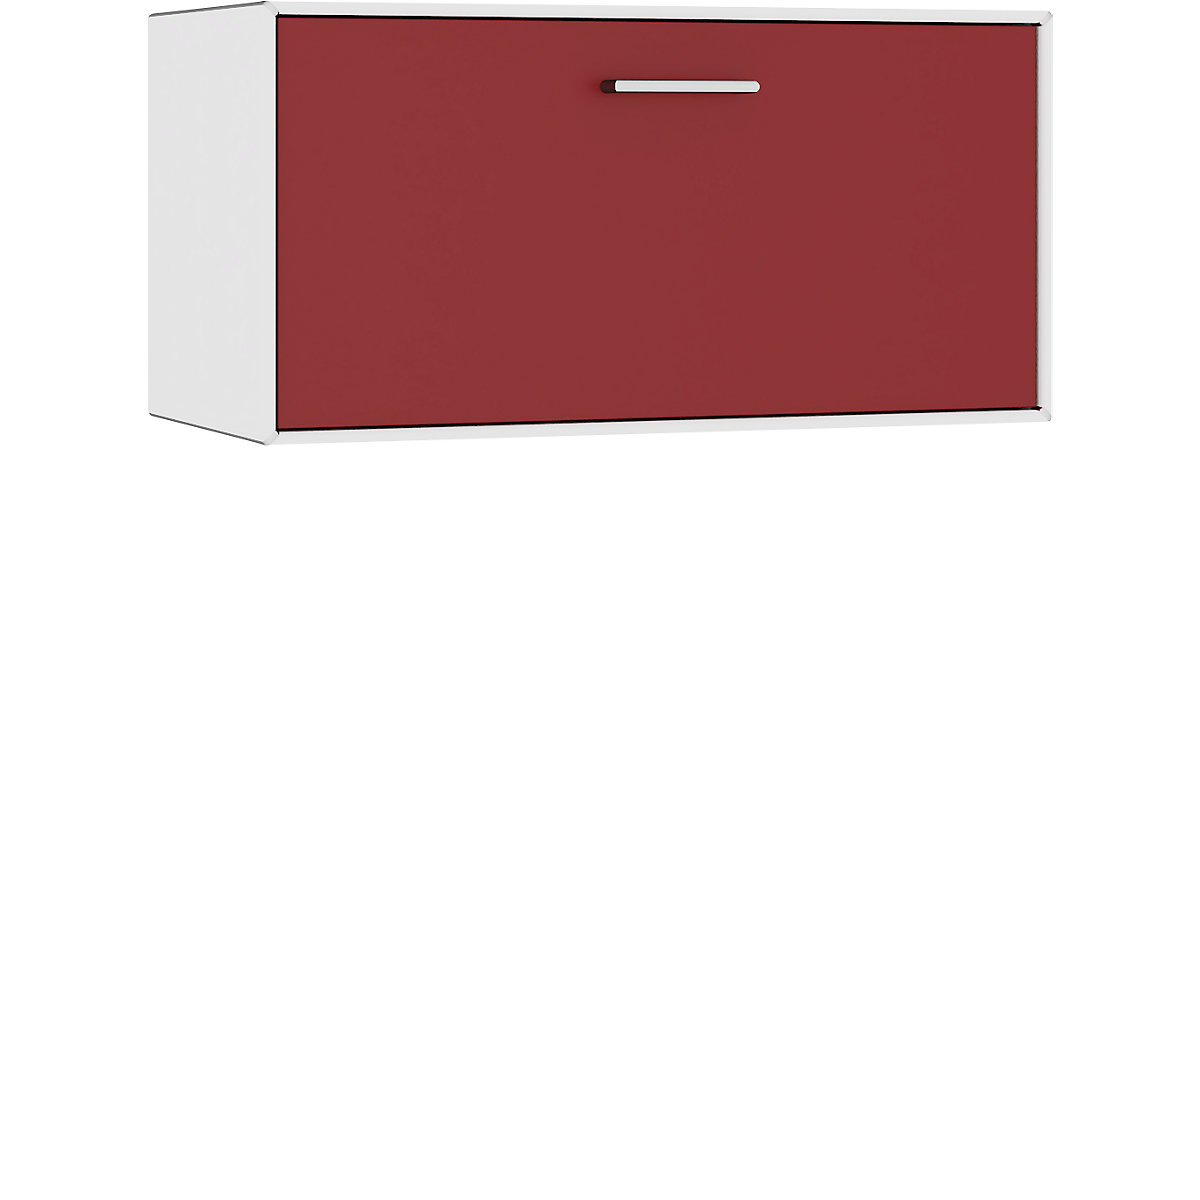 mauser Einzelbox, hängend, 1 Barfachklappe, Breite 770 mm, reinweiß / rubinrot